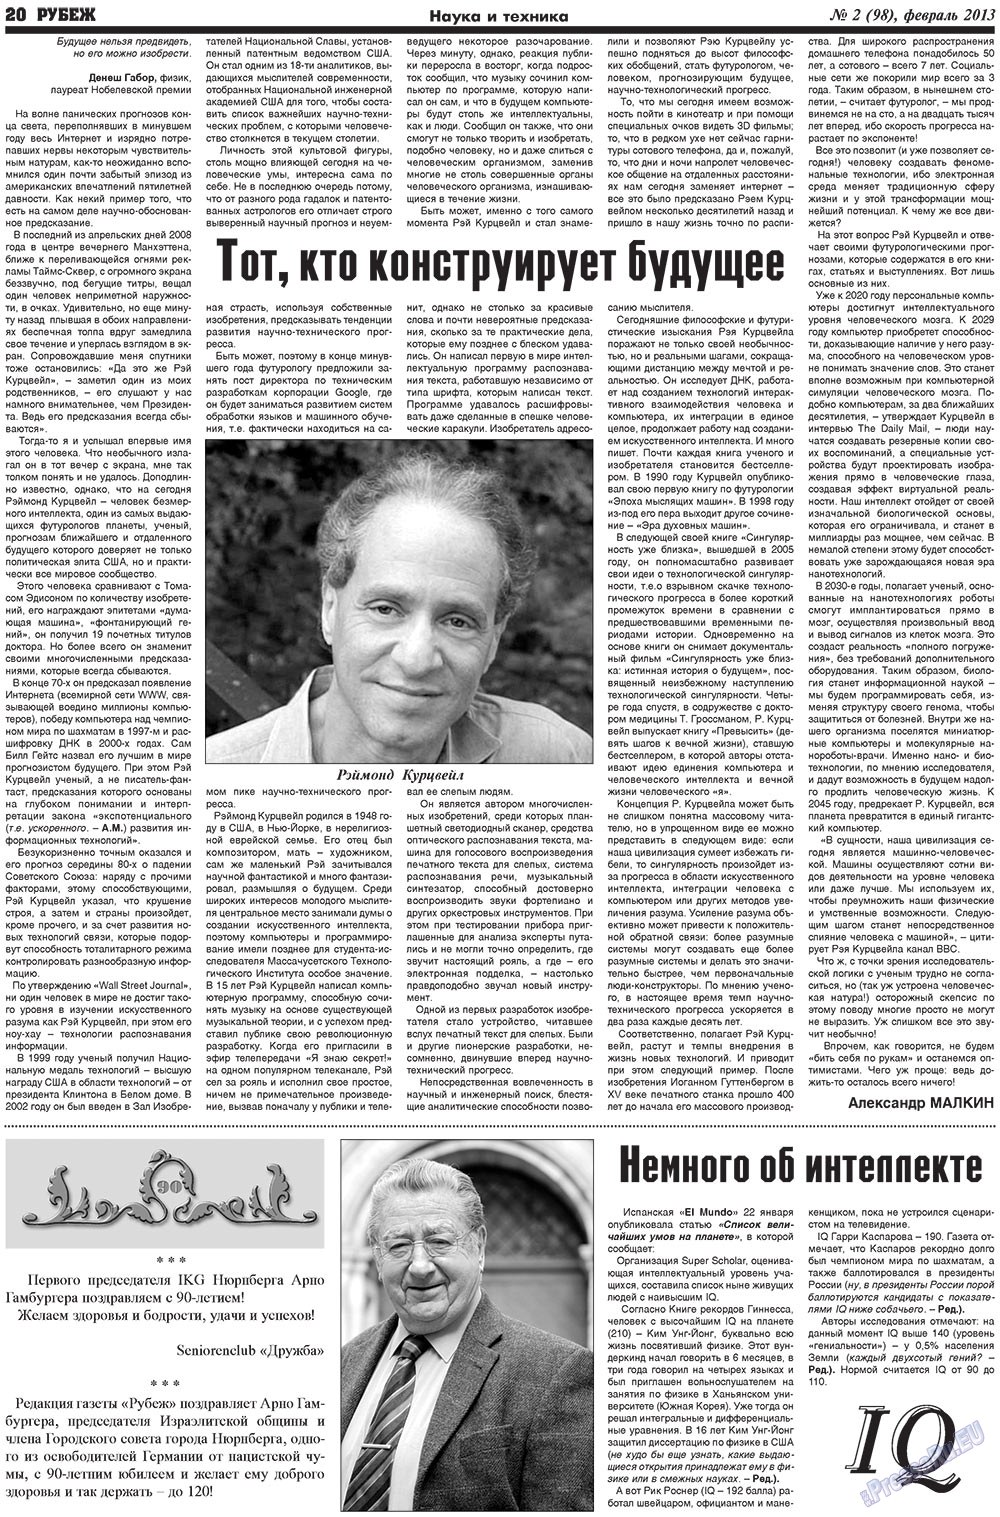 Рубеж (газета). 2013 год, номер 2, стр. 20